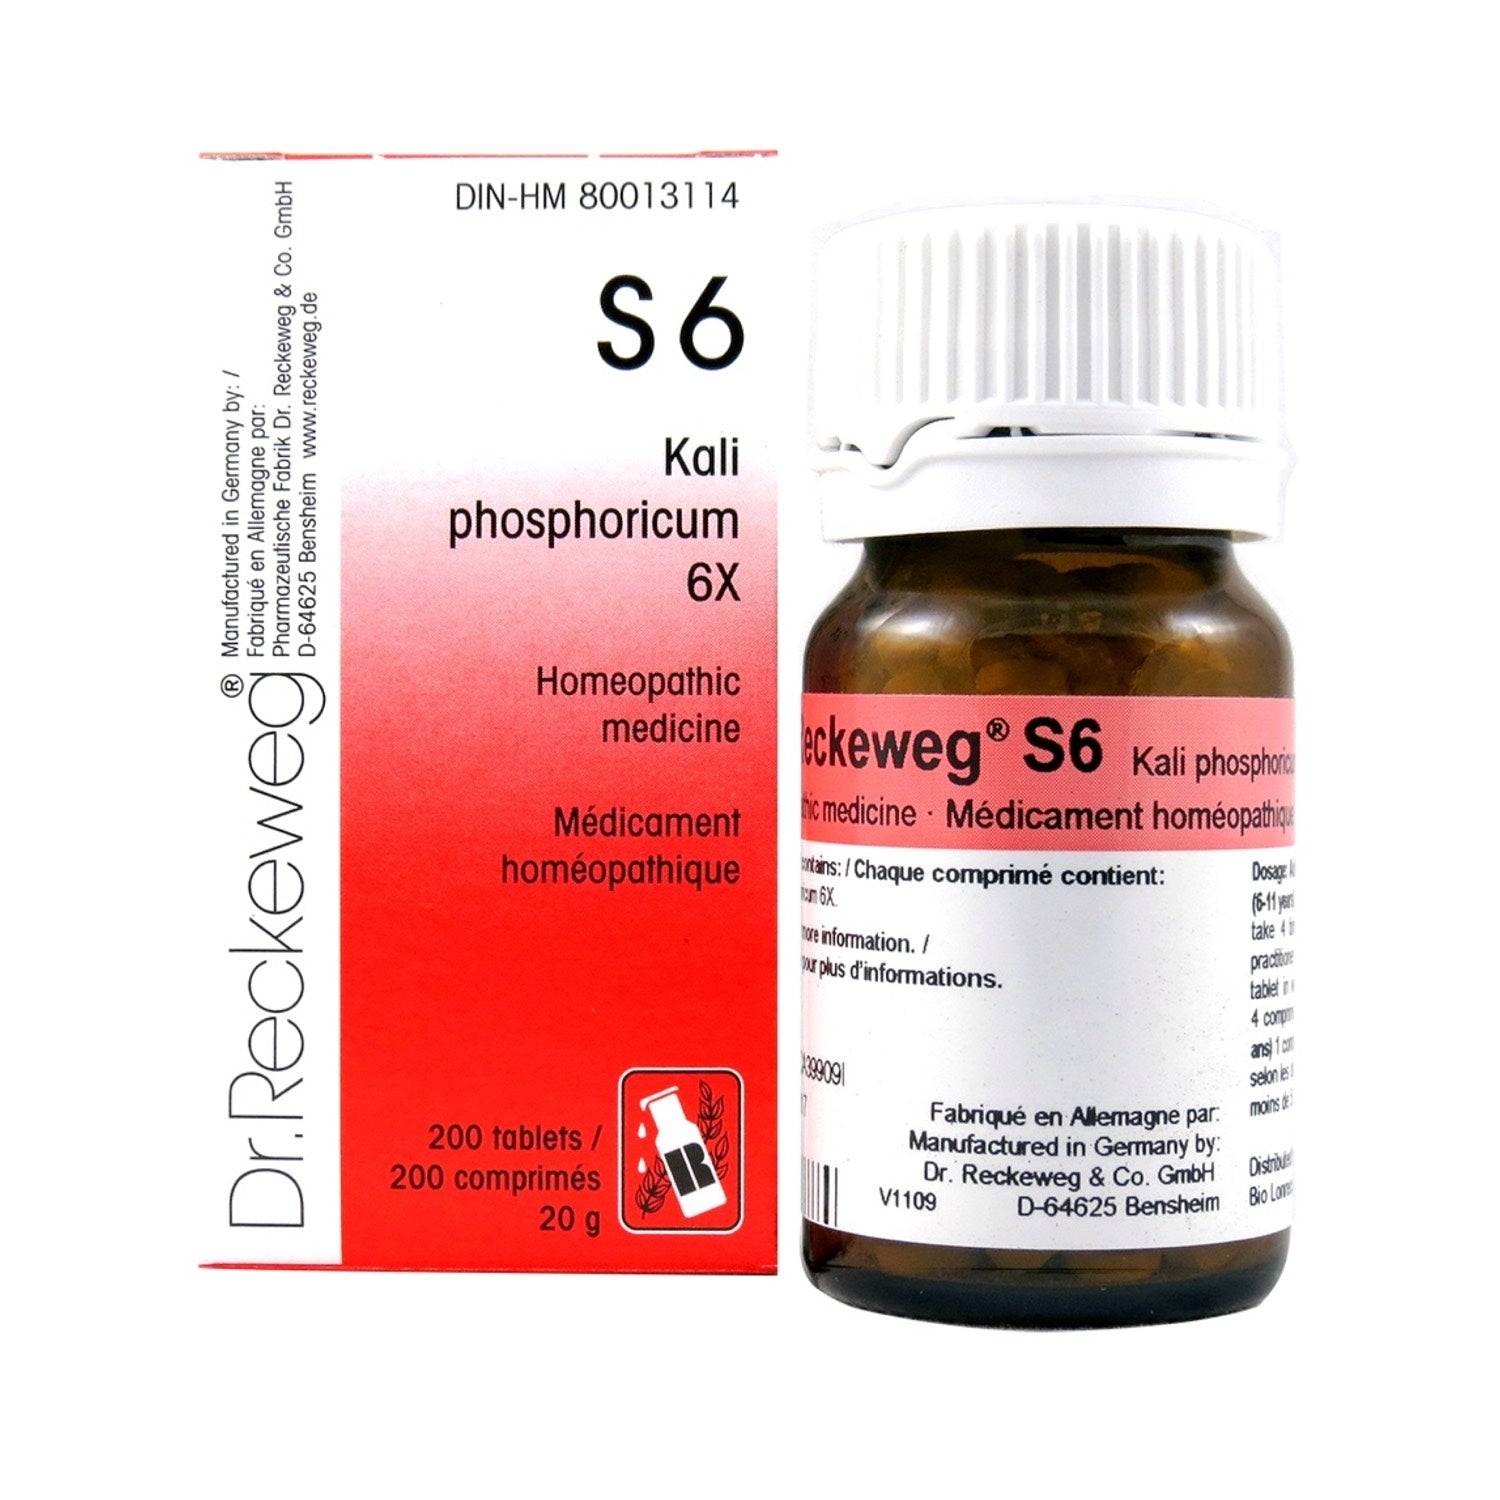 S6 Kali phosphoricum Homeopathic medicine Schuessler Salt 6X 200 tablets (20 g)